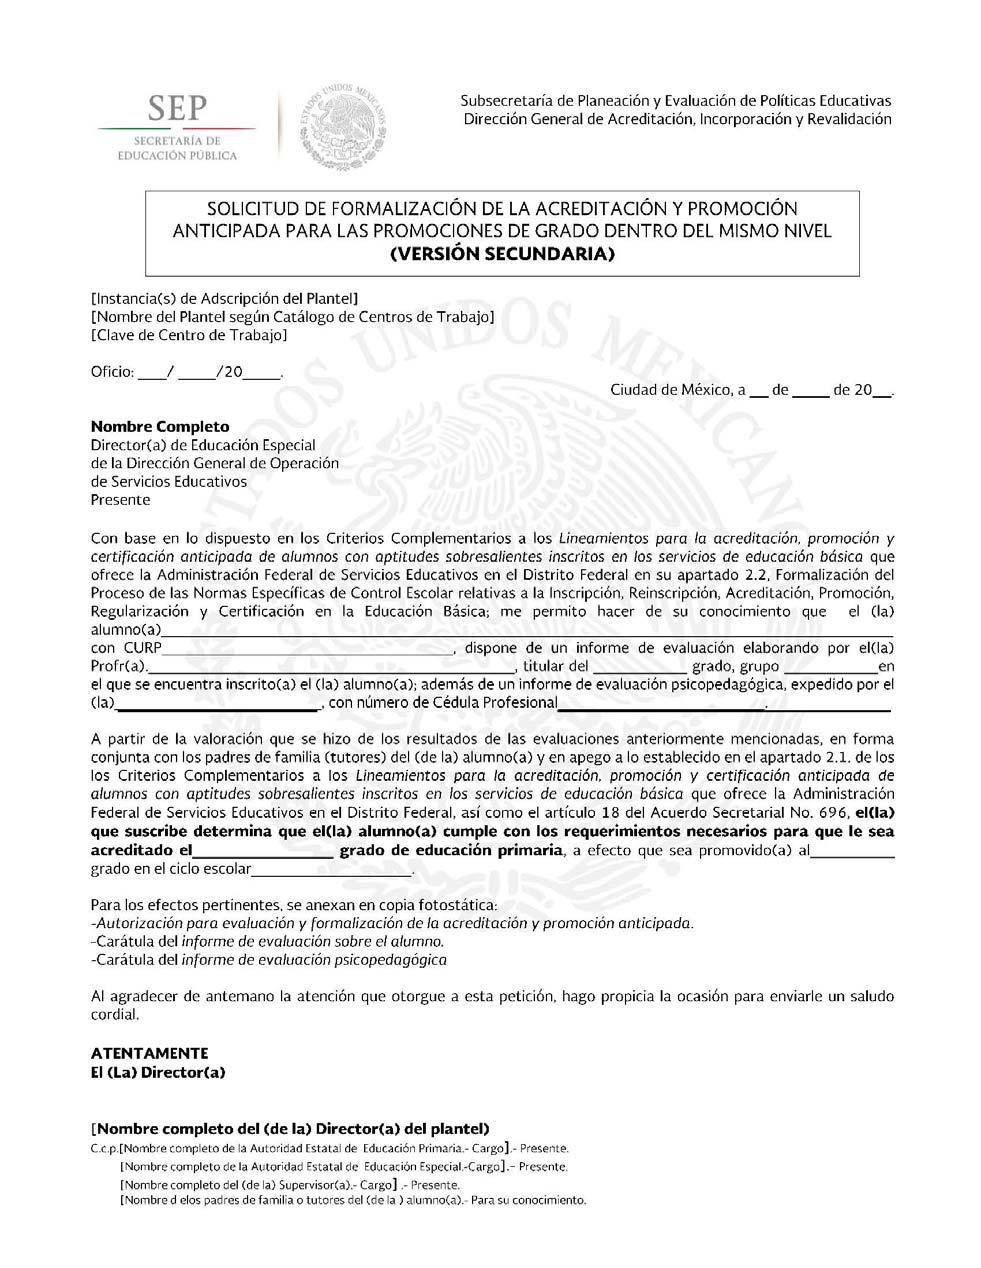 APCA-CE-04 SOLICITUD DE FORMALIZACIÓN DE LA ACREDITACIÓN Y